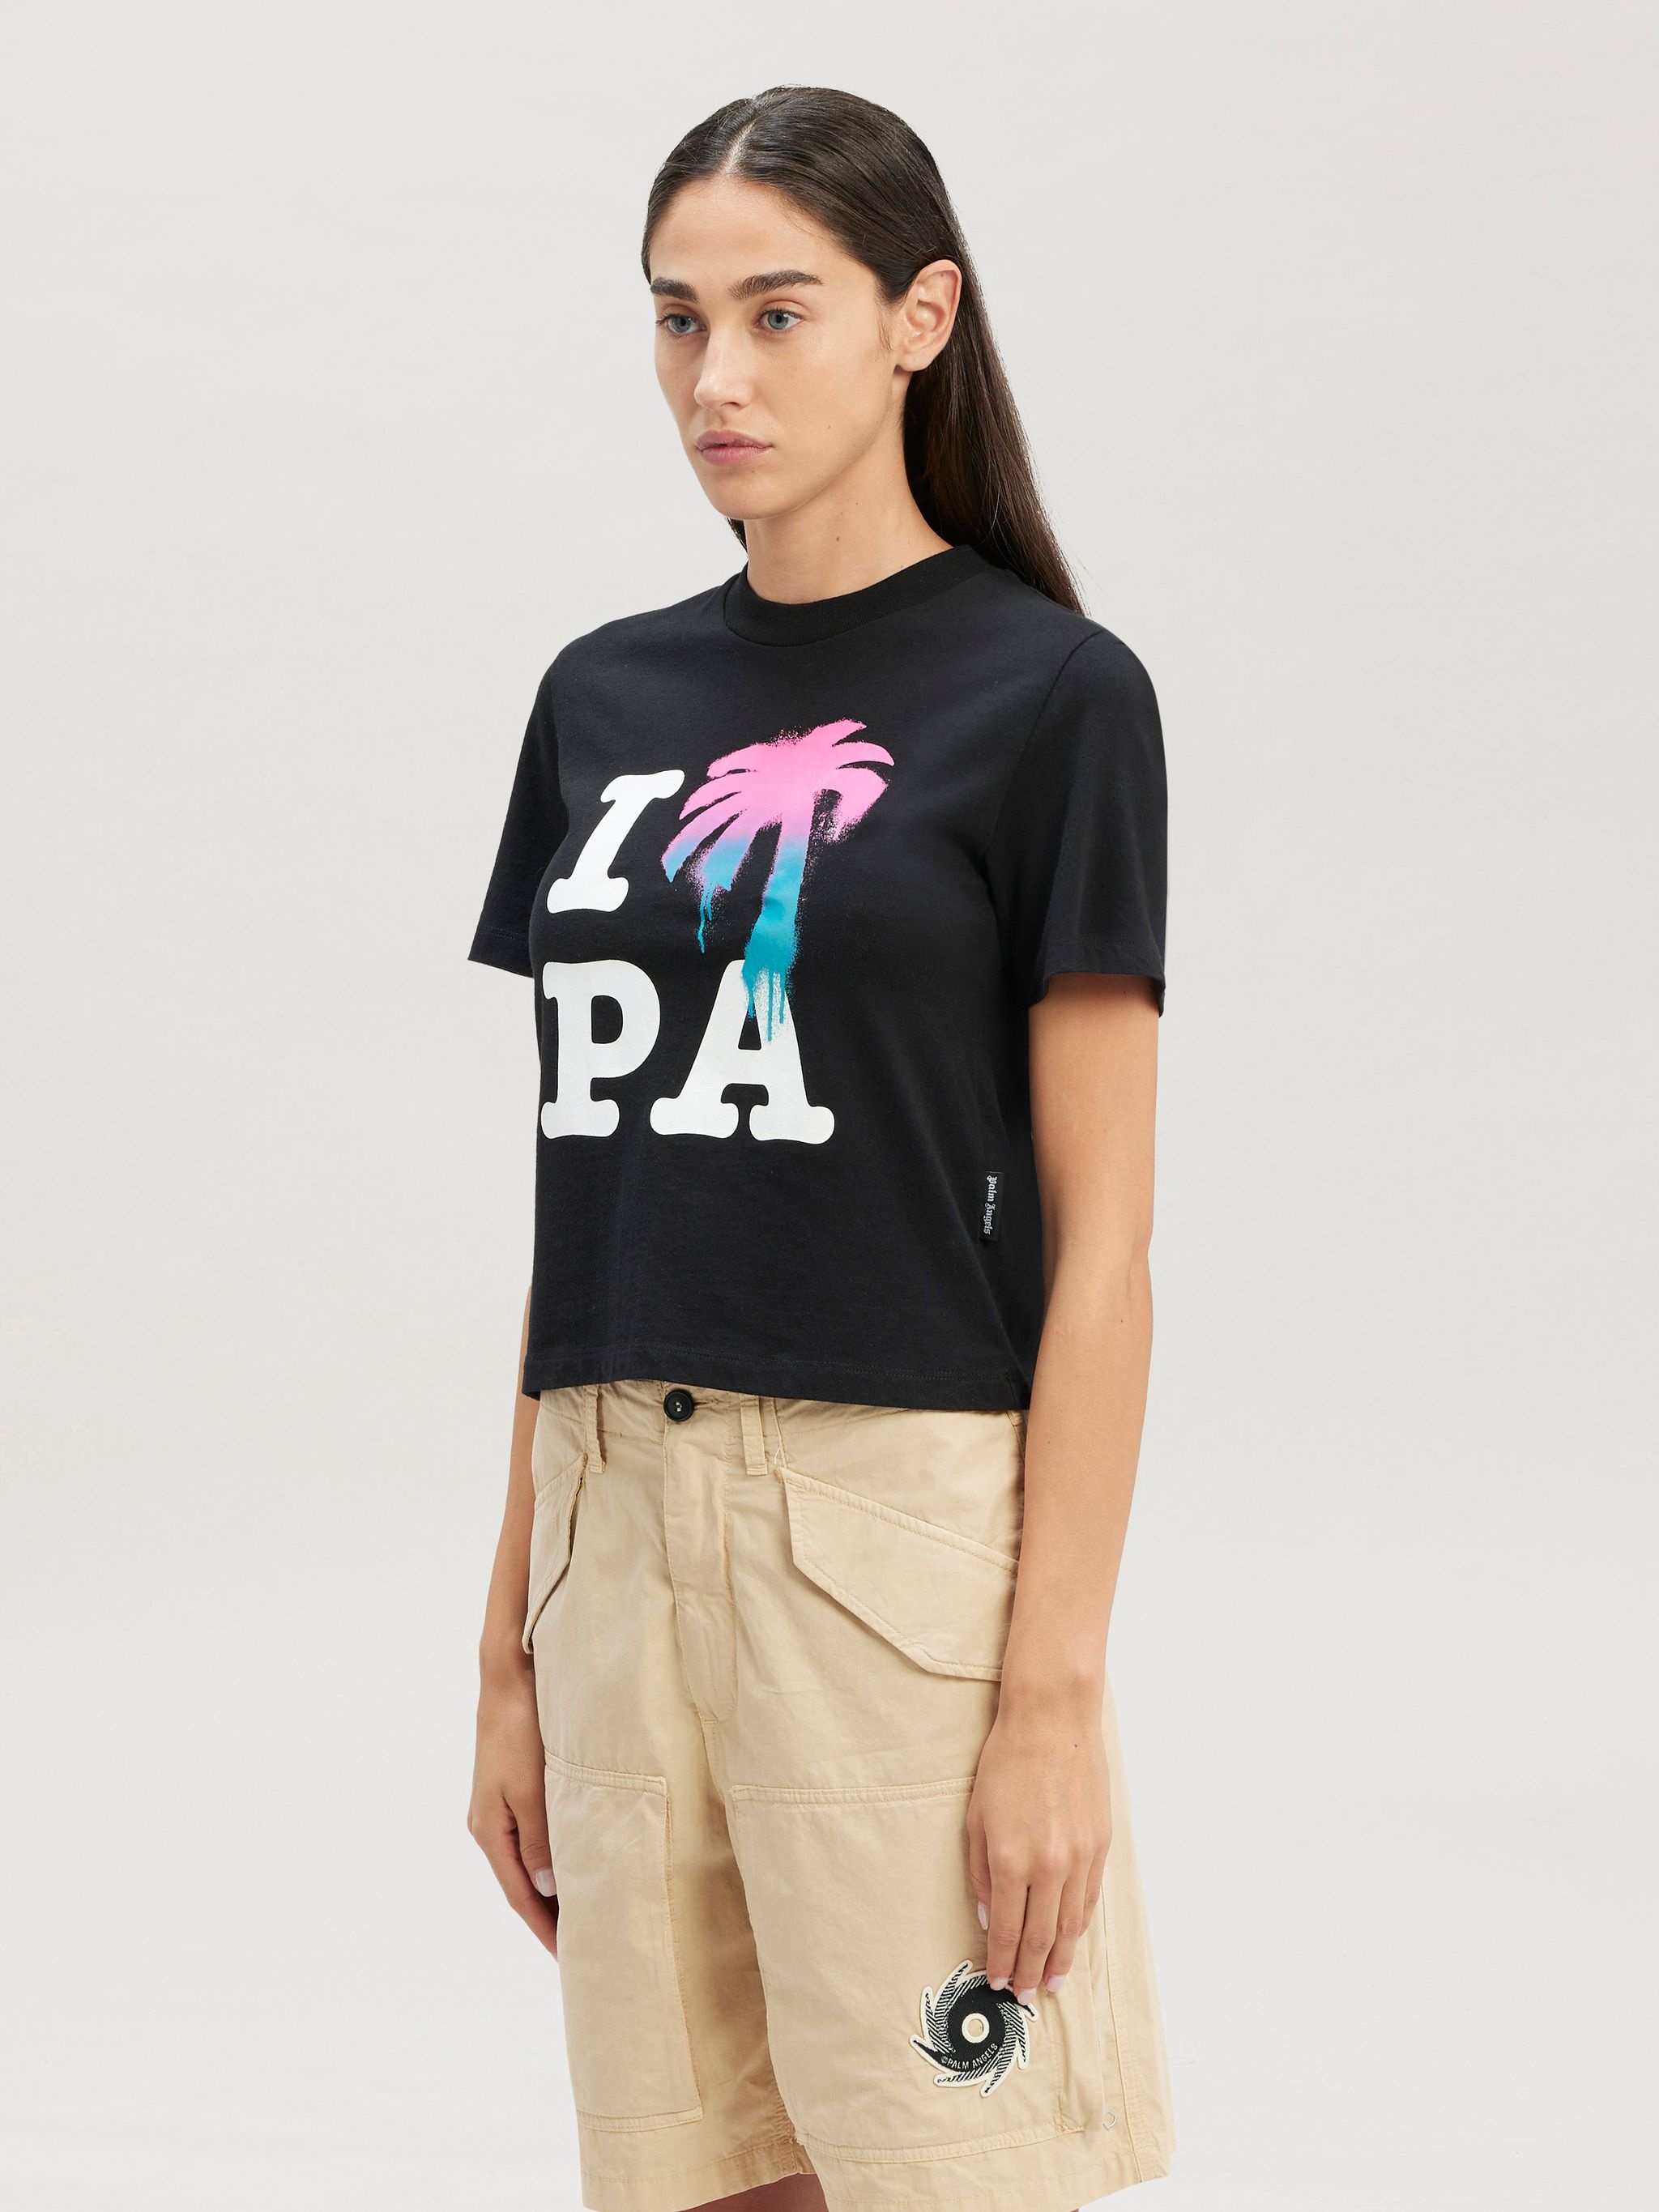 I Love Pa Slim T-shirt - 4